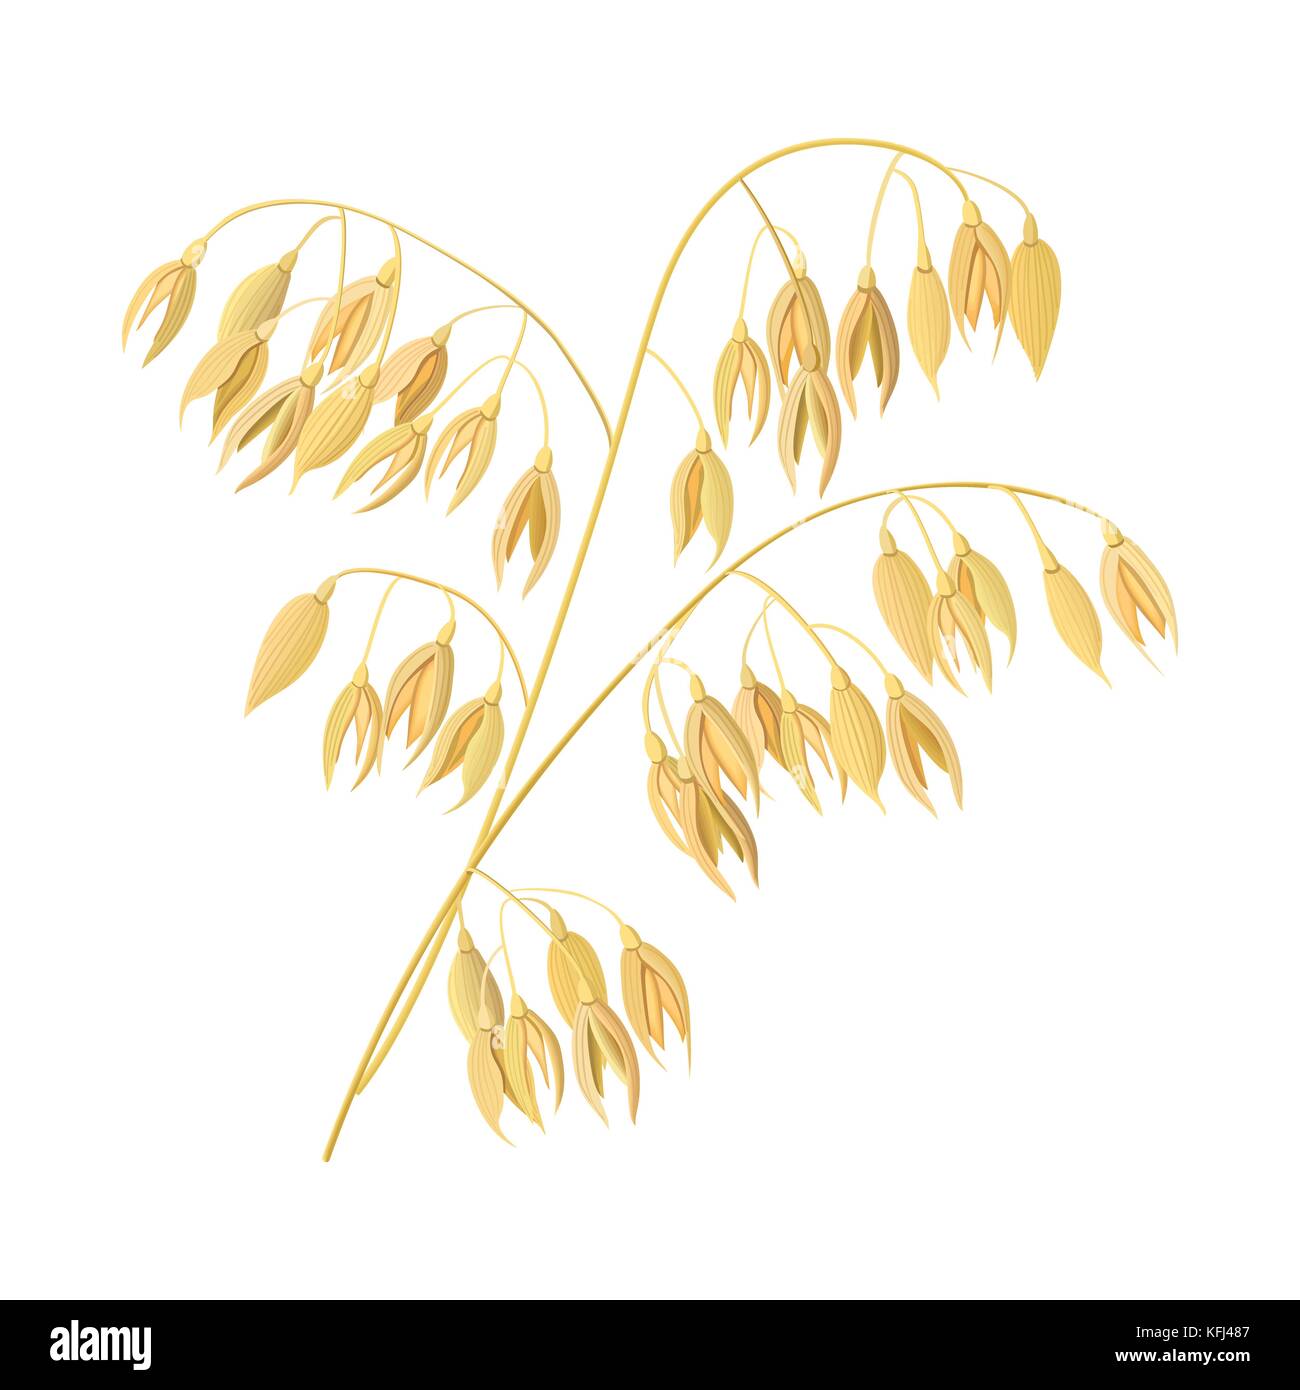 Les épis de blé, orge. icône 3d de céréales céréales vector. et les oreilles. le temps de la récolte des plantes et semences Illustration de Vecteur